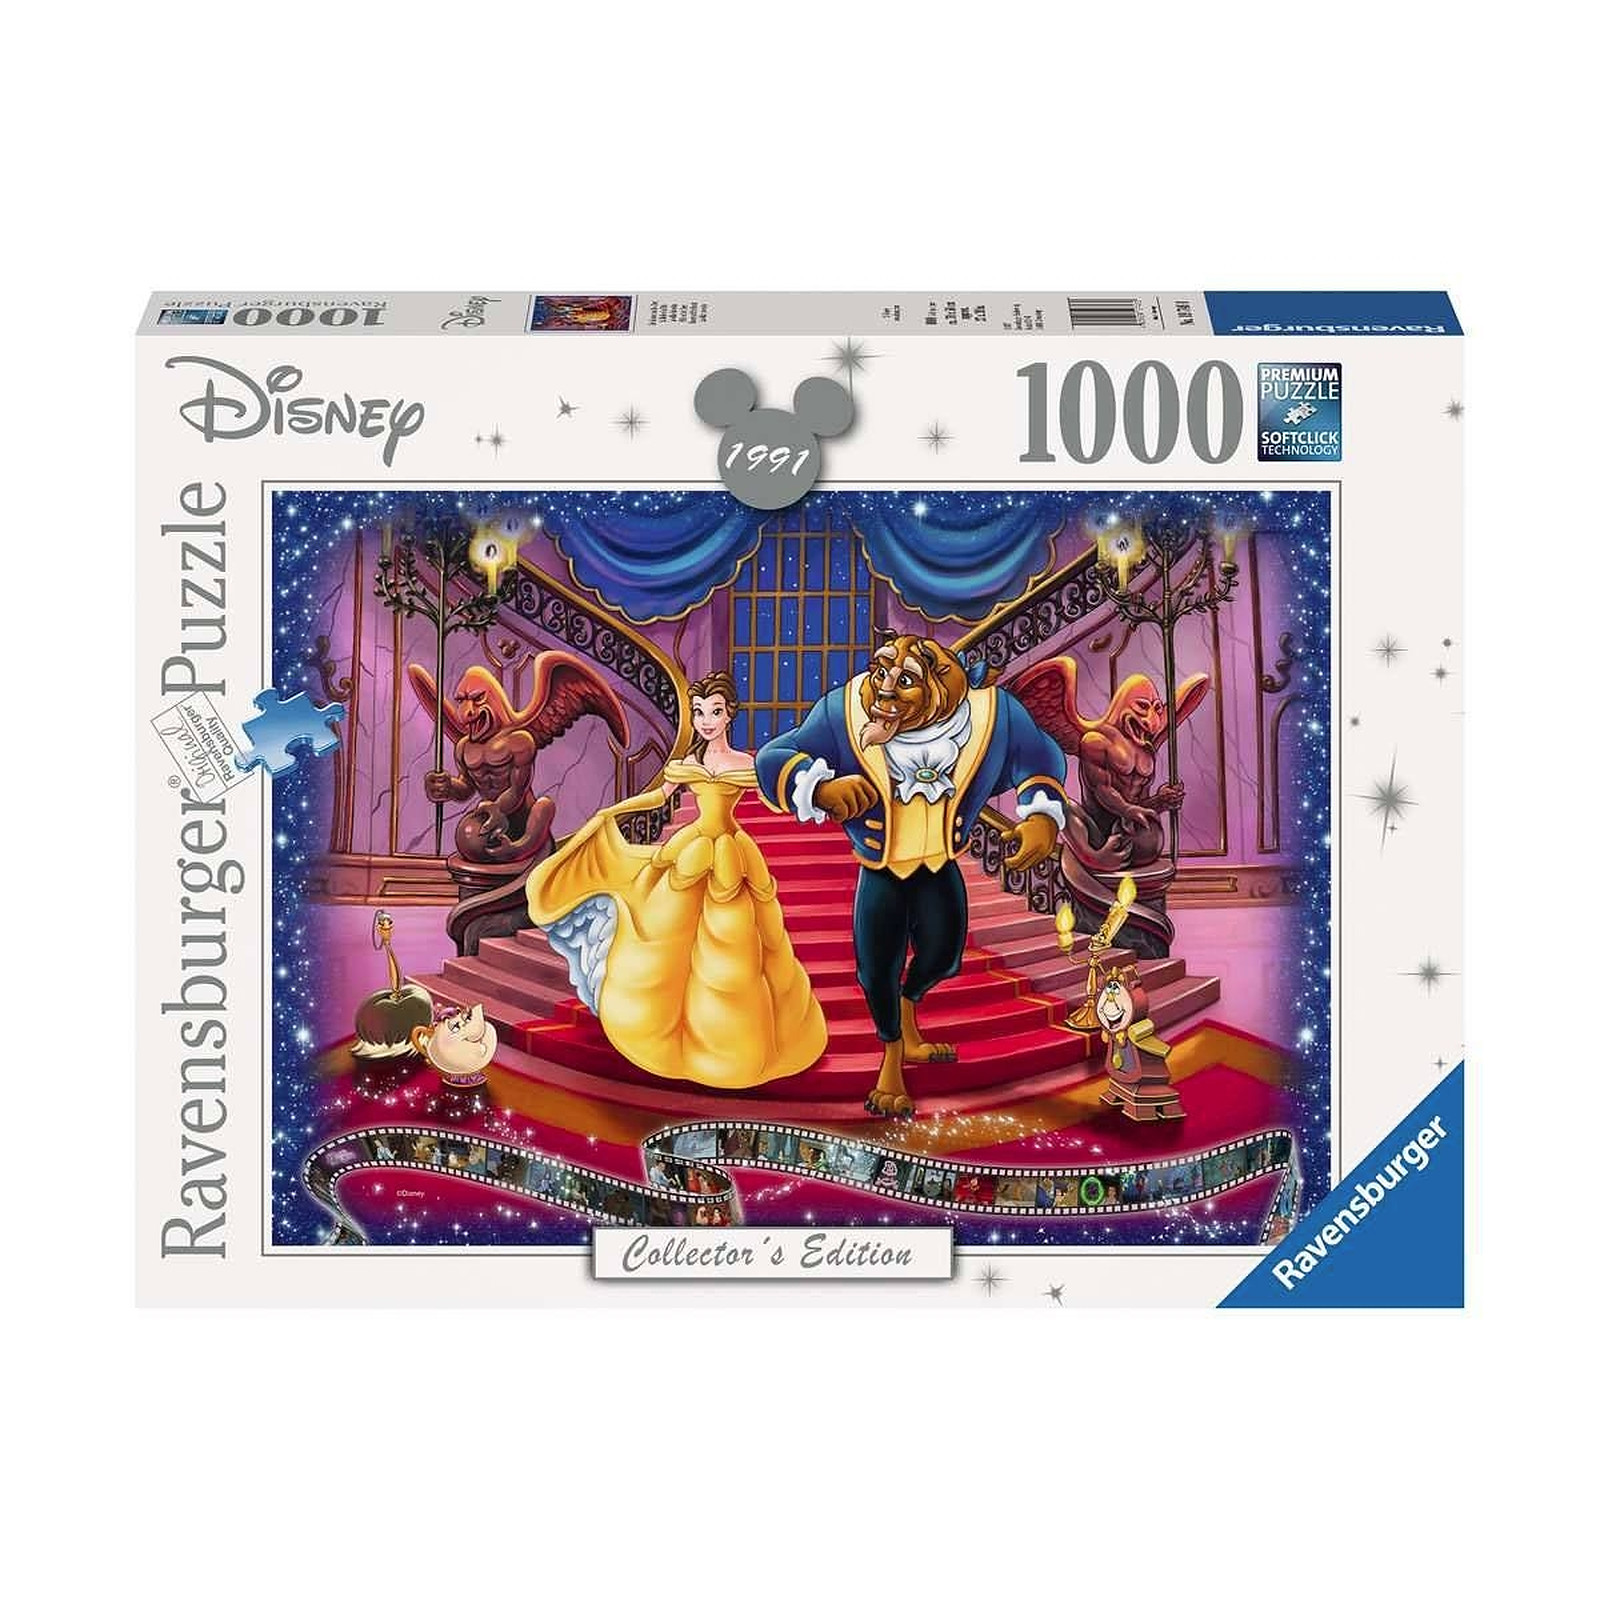 La Belle et la Bete - Puzzle Disney Collector's Edition La Belle et la Bete (1000 pièces) - Puzzle Clementoni